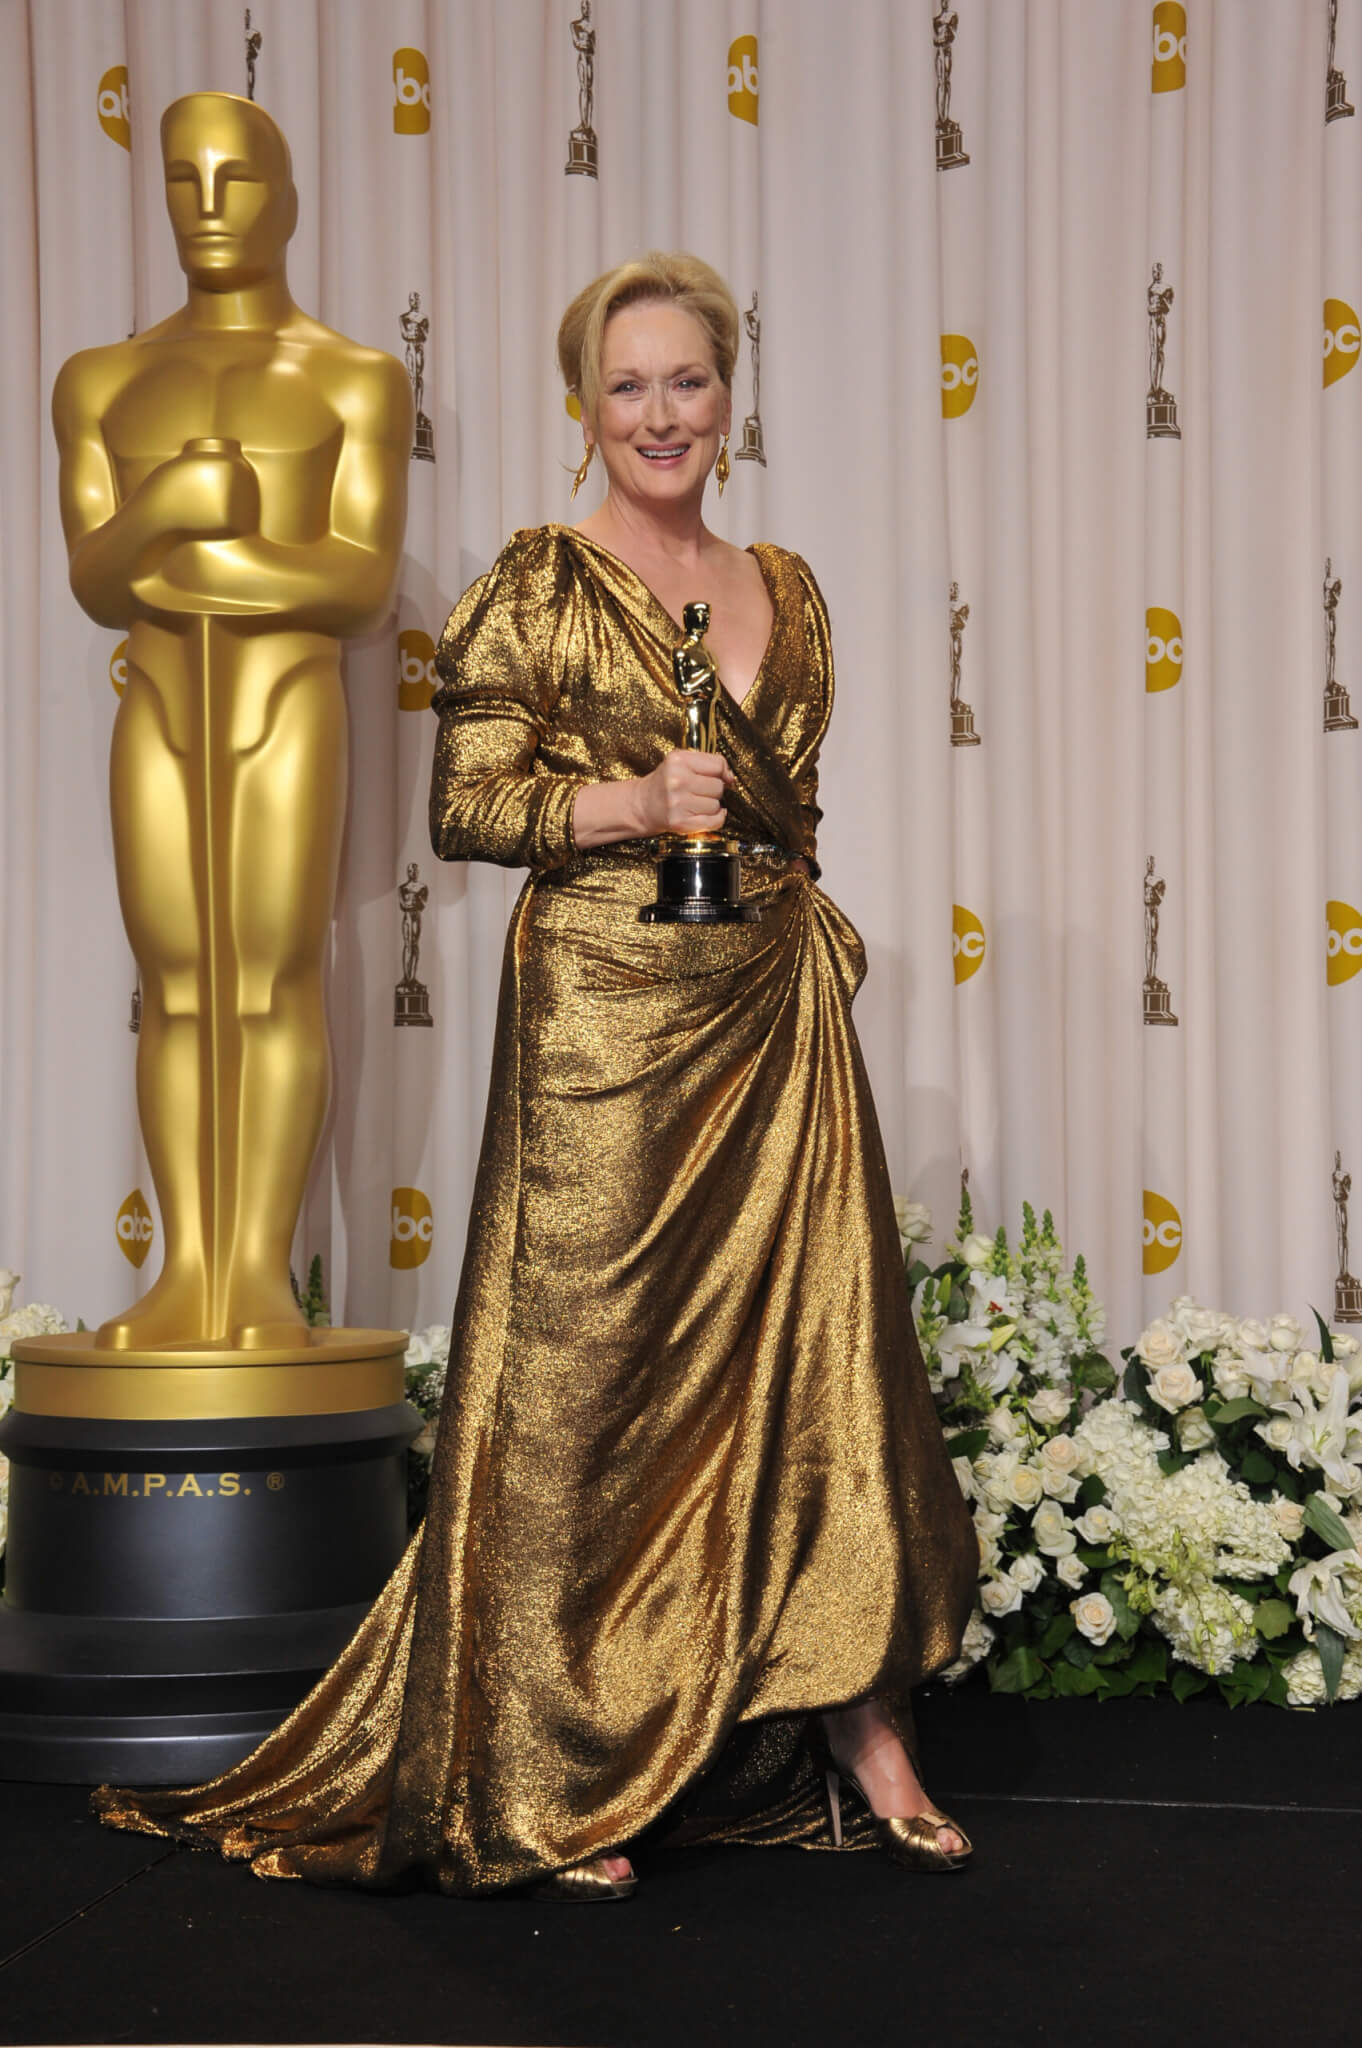 Meryl Streep at the Oscars in 2012